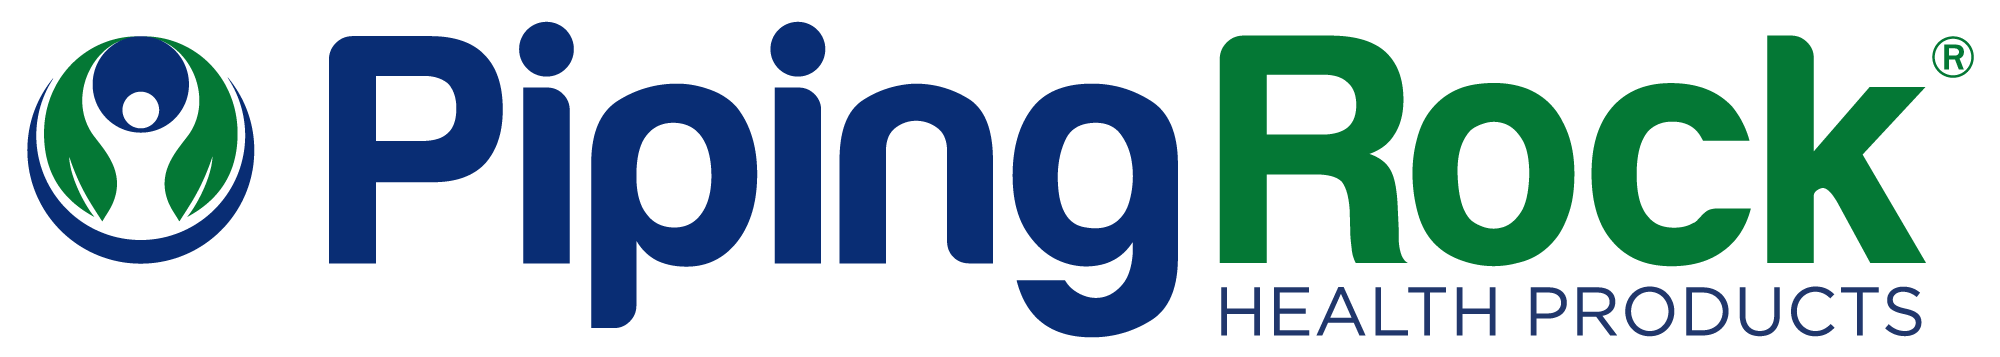 Piping Rock Company Logo